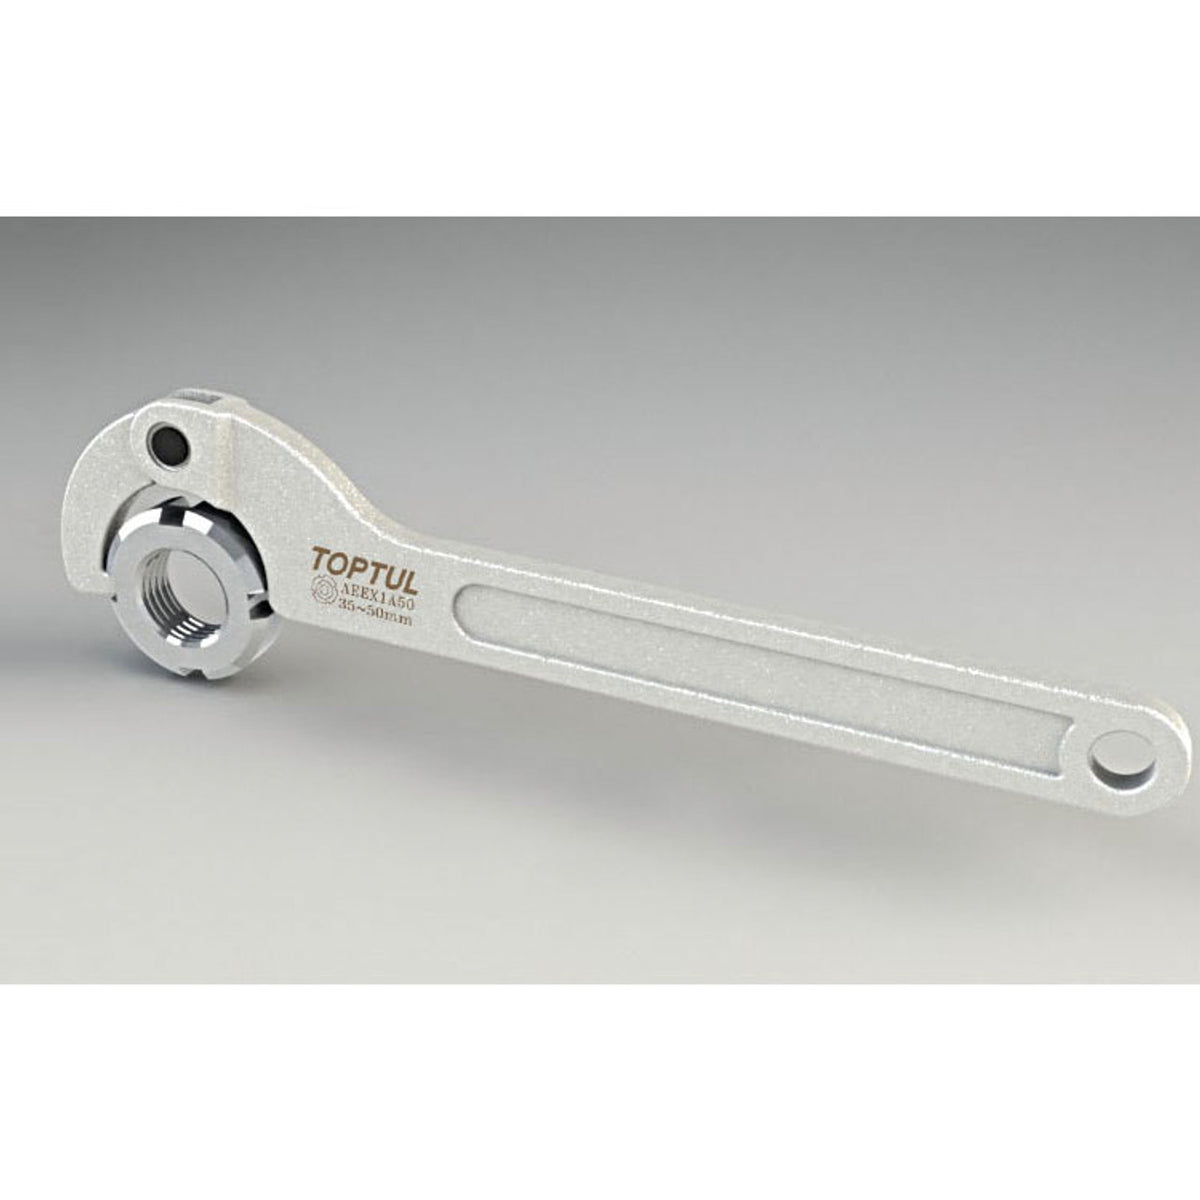 TOPTUL AEEX1A35 Adjustable Hook Spanner 13-35mm – SA Alltools